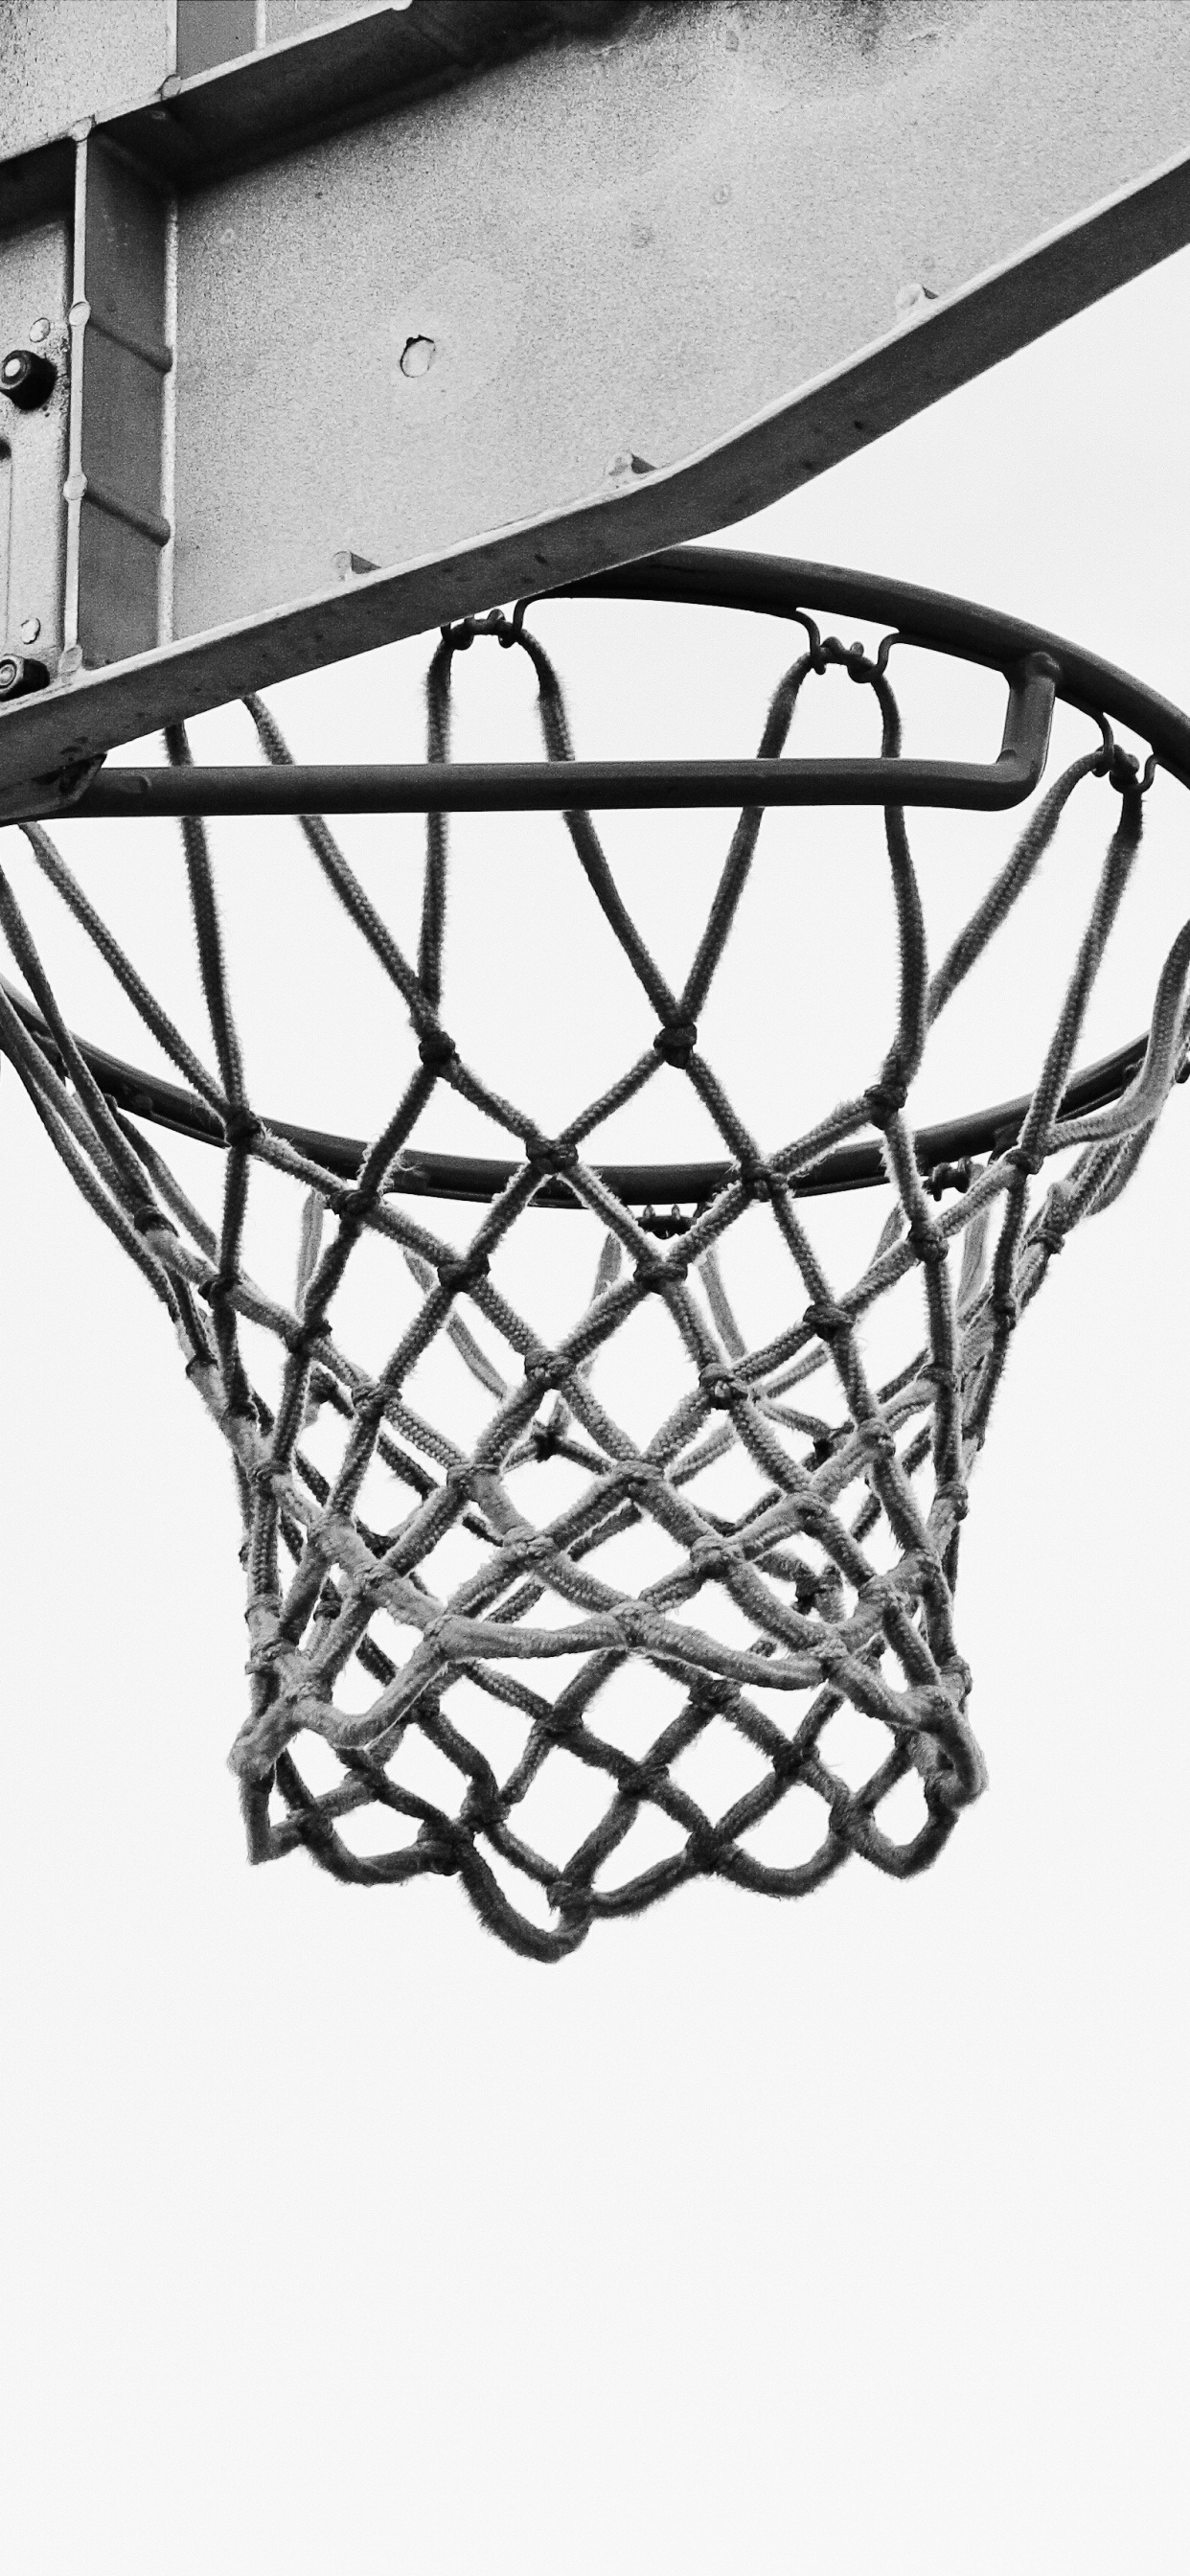 Basketball Auf Basketballkorb in Graustufenfotografie. Wallpaper in 1242x2688 Resolution